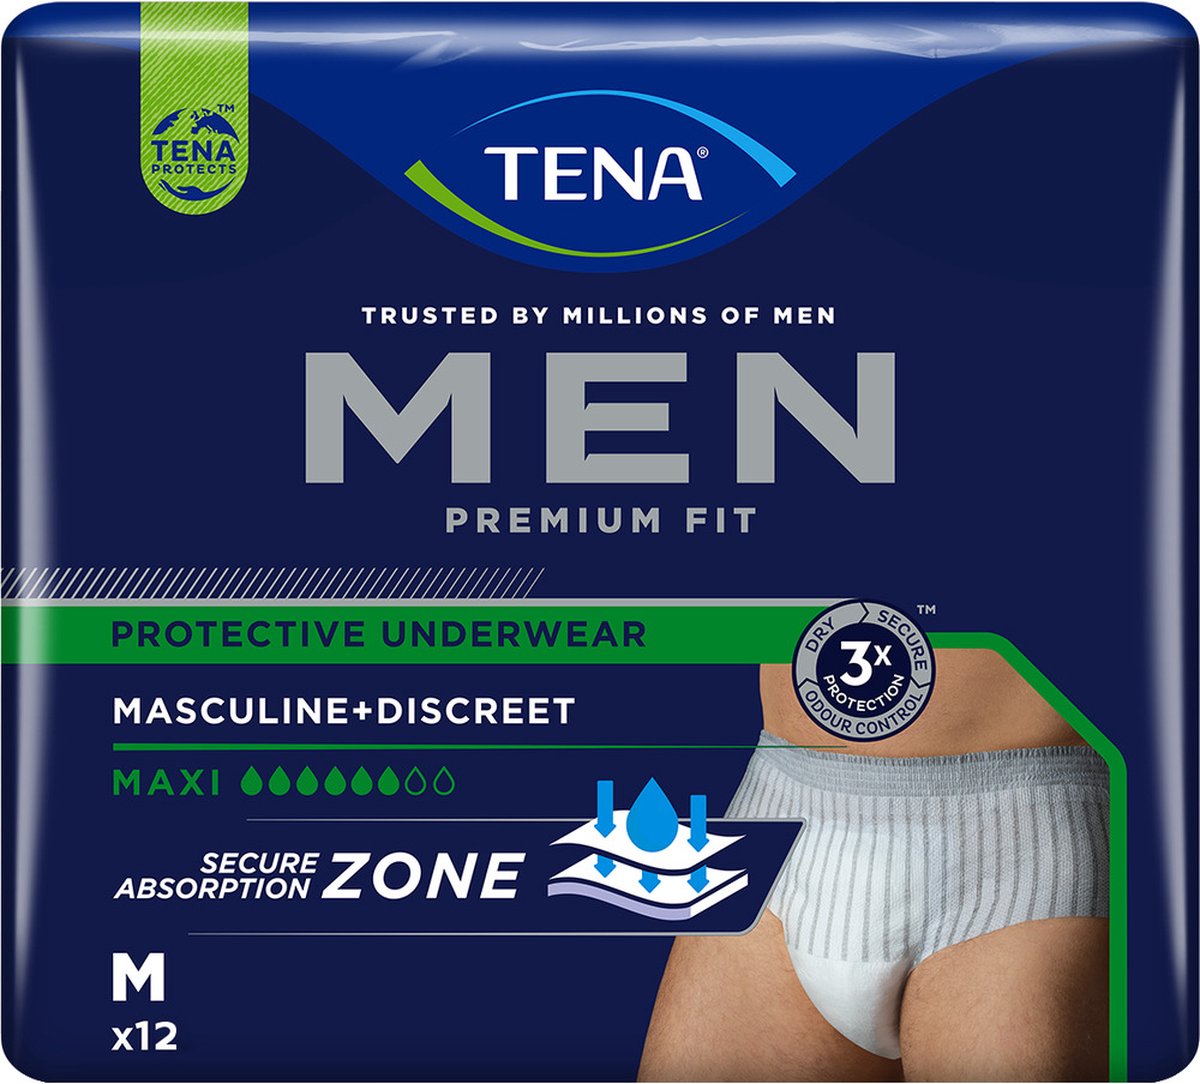 TENA Men Premium Fit  Sous-vêtement Absorbant